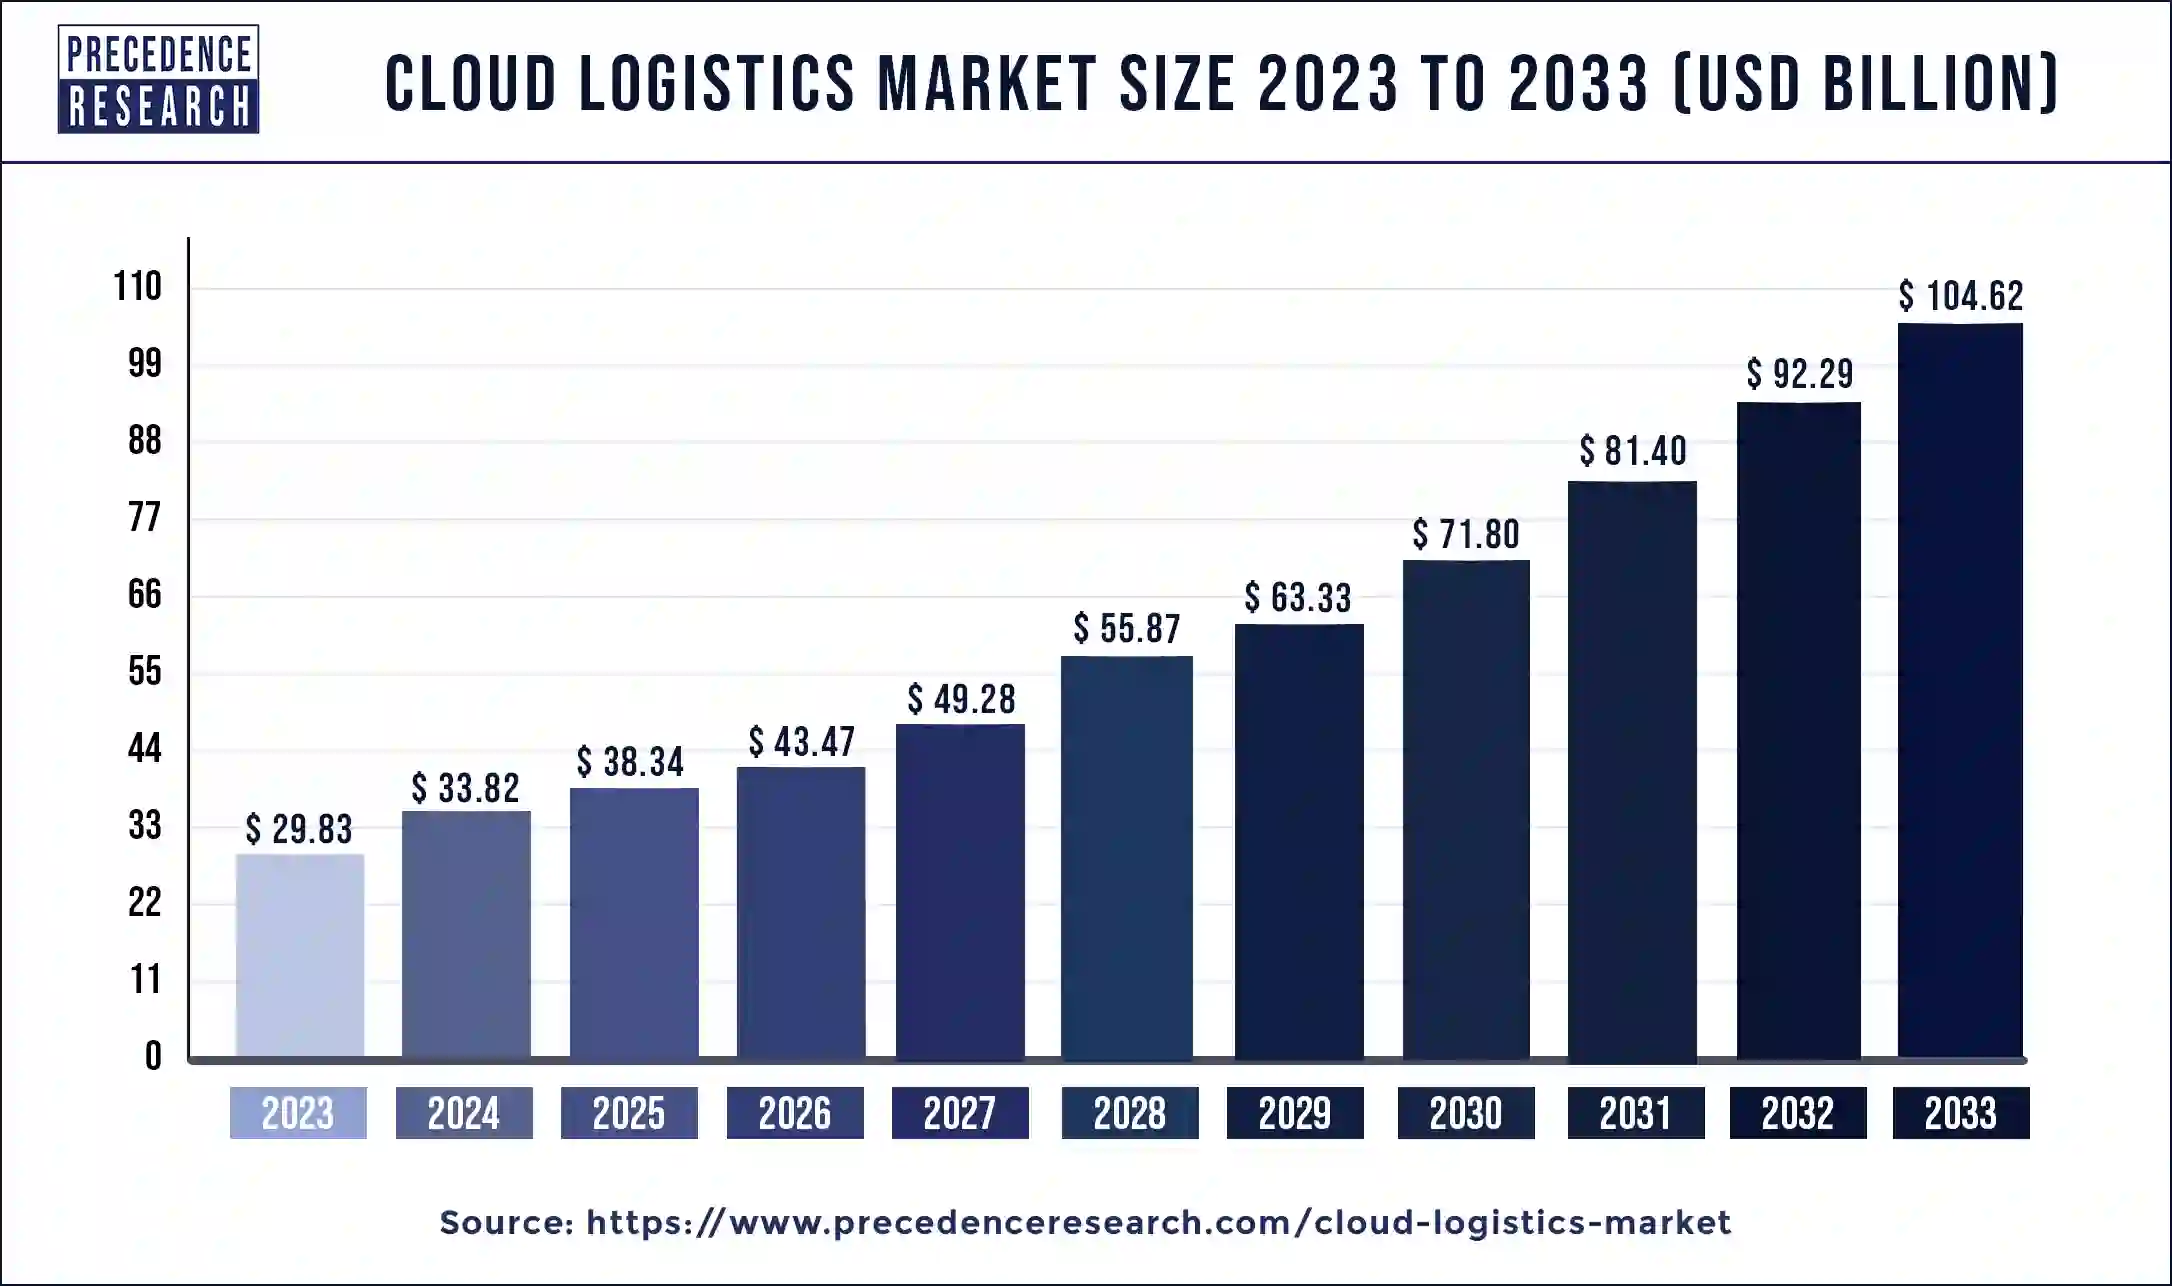 Cloud Logistics Market Size 2024 to 2033